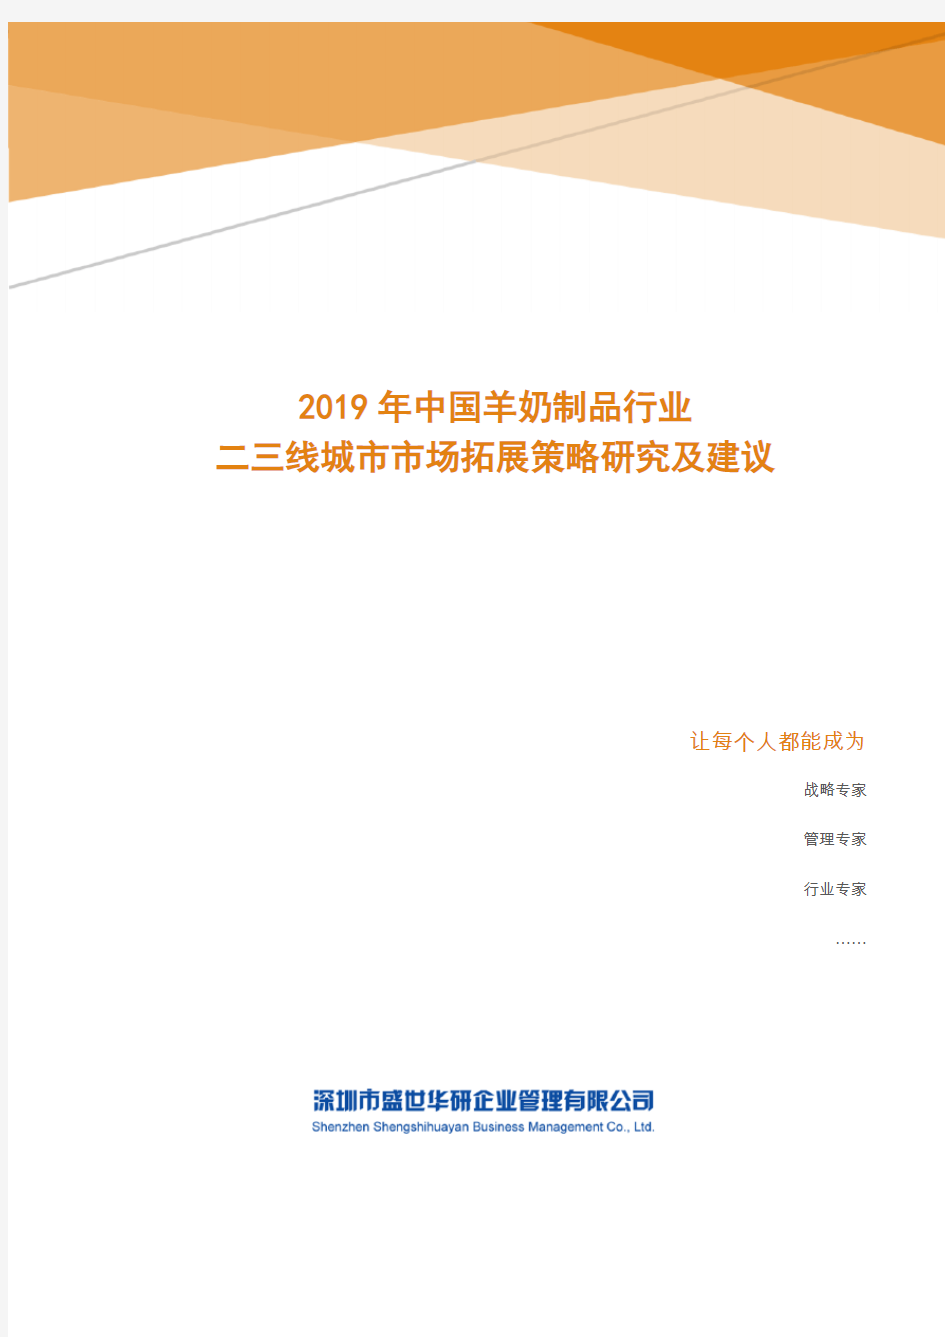 2019年中国羊奶制品行业二三线城市市场拓展策略研究及建议